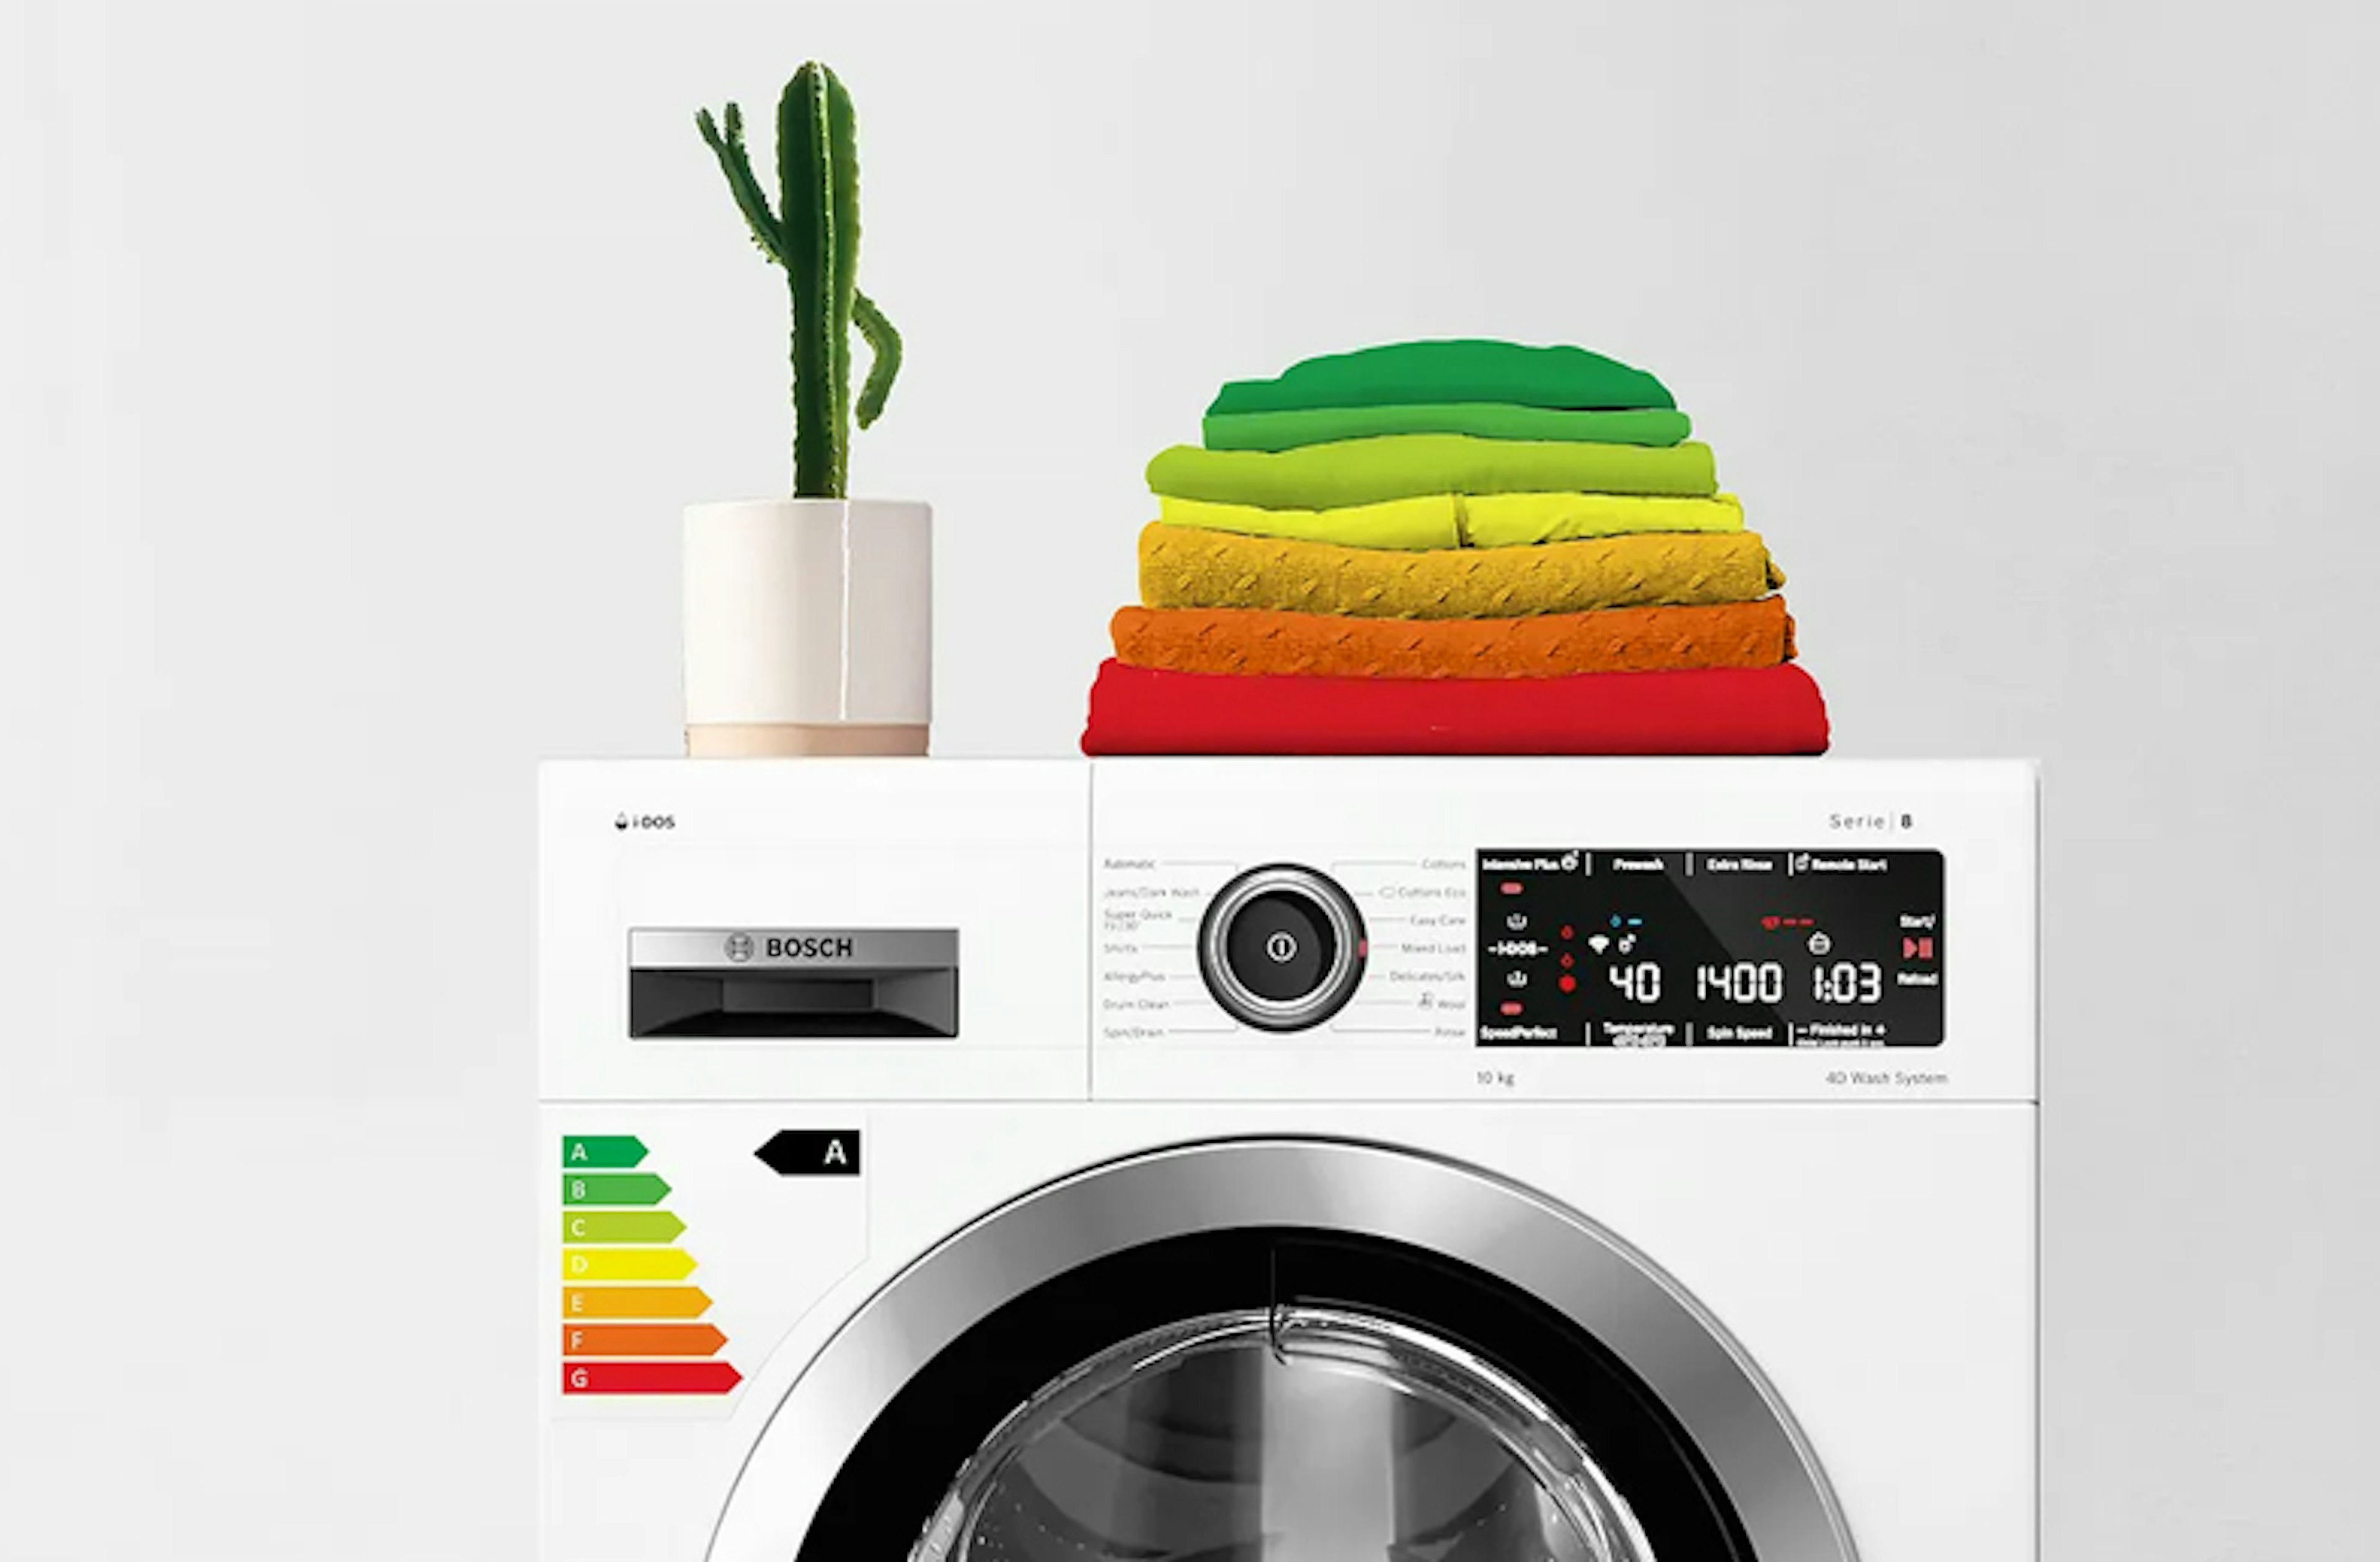 Bosch serie 8 wasmachines hebben energieklasse A